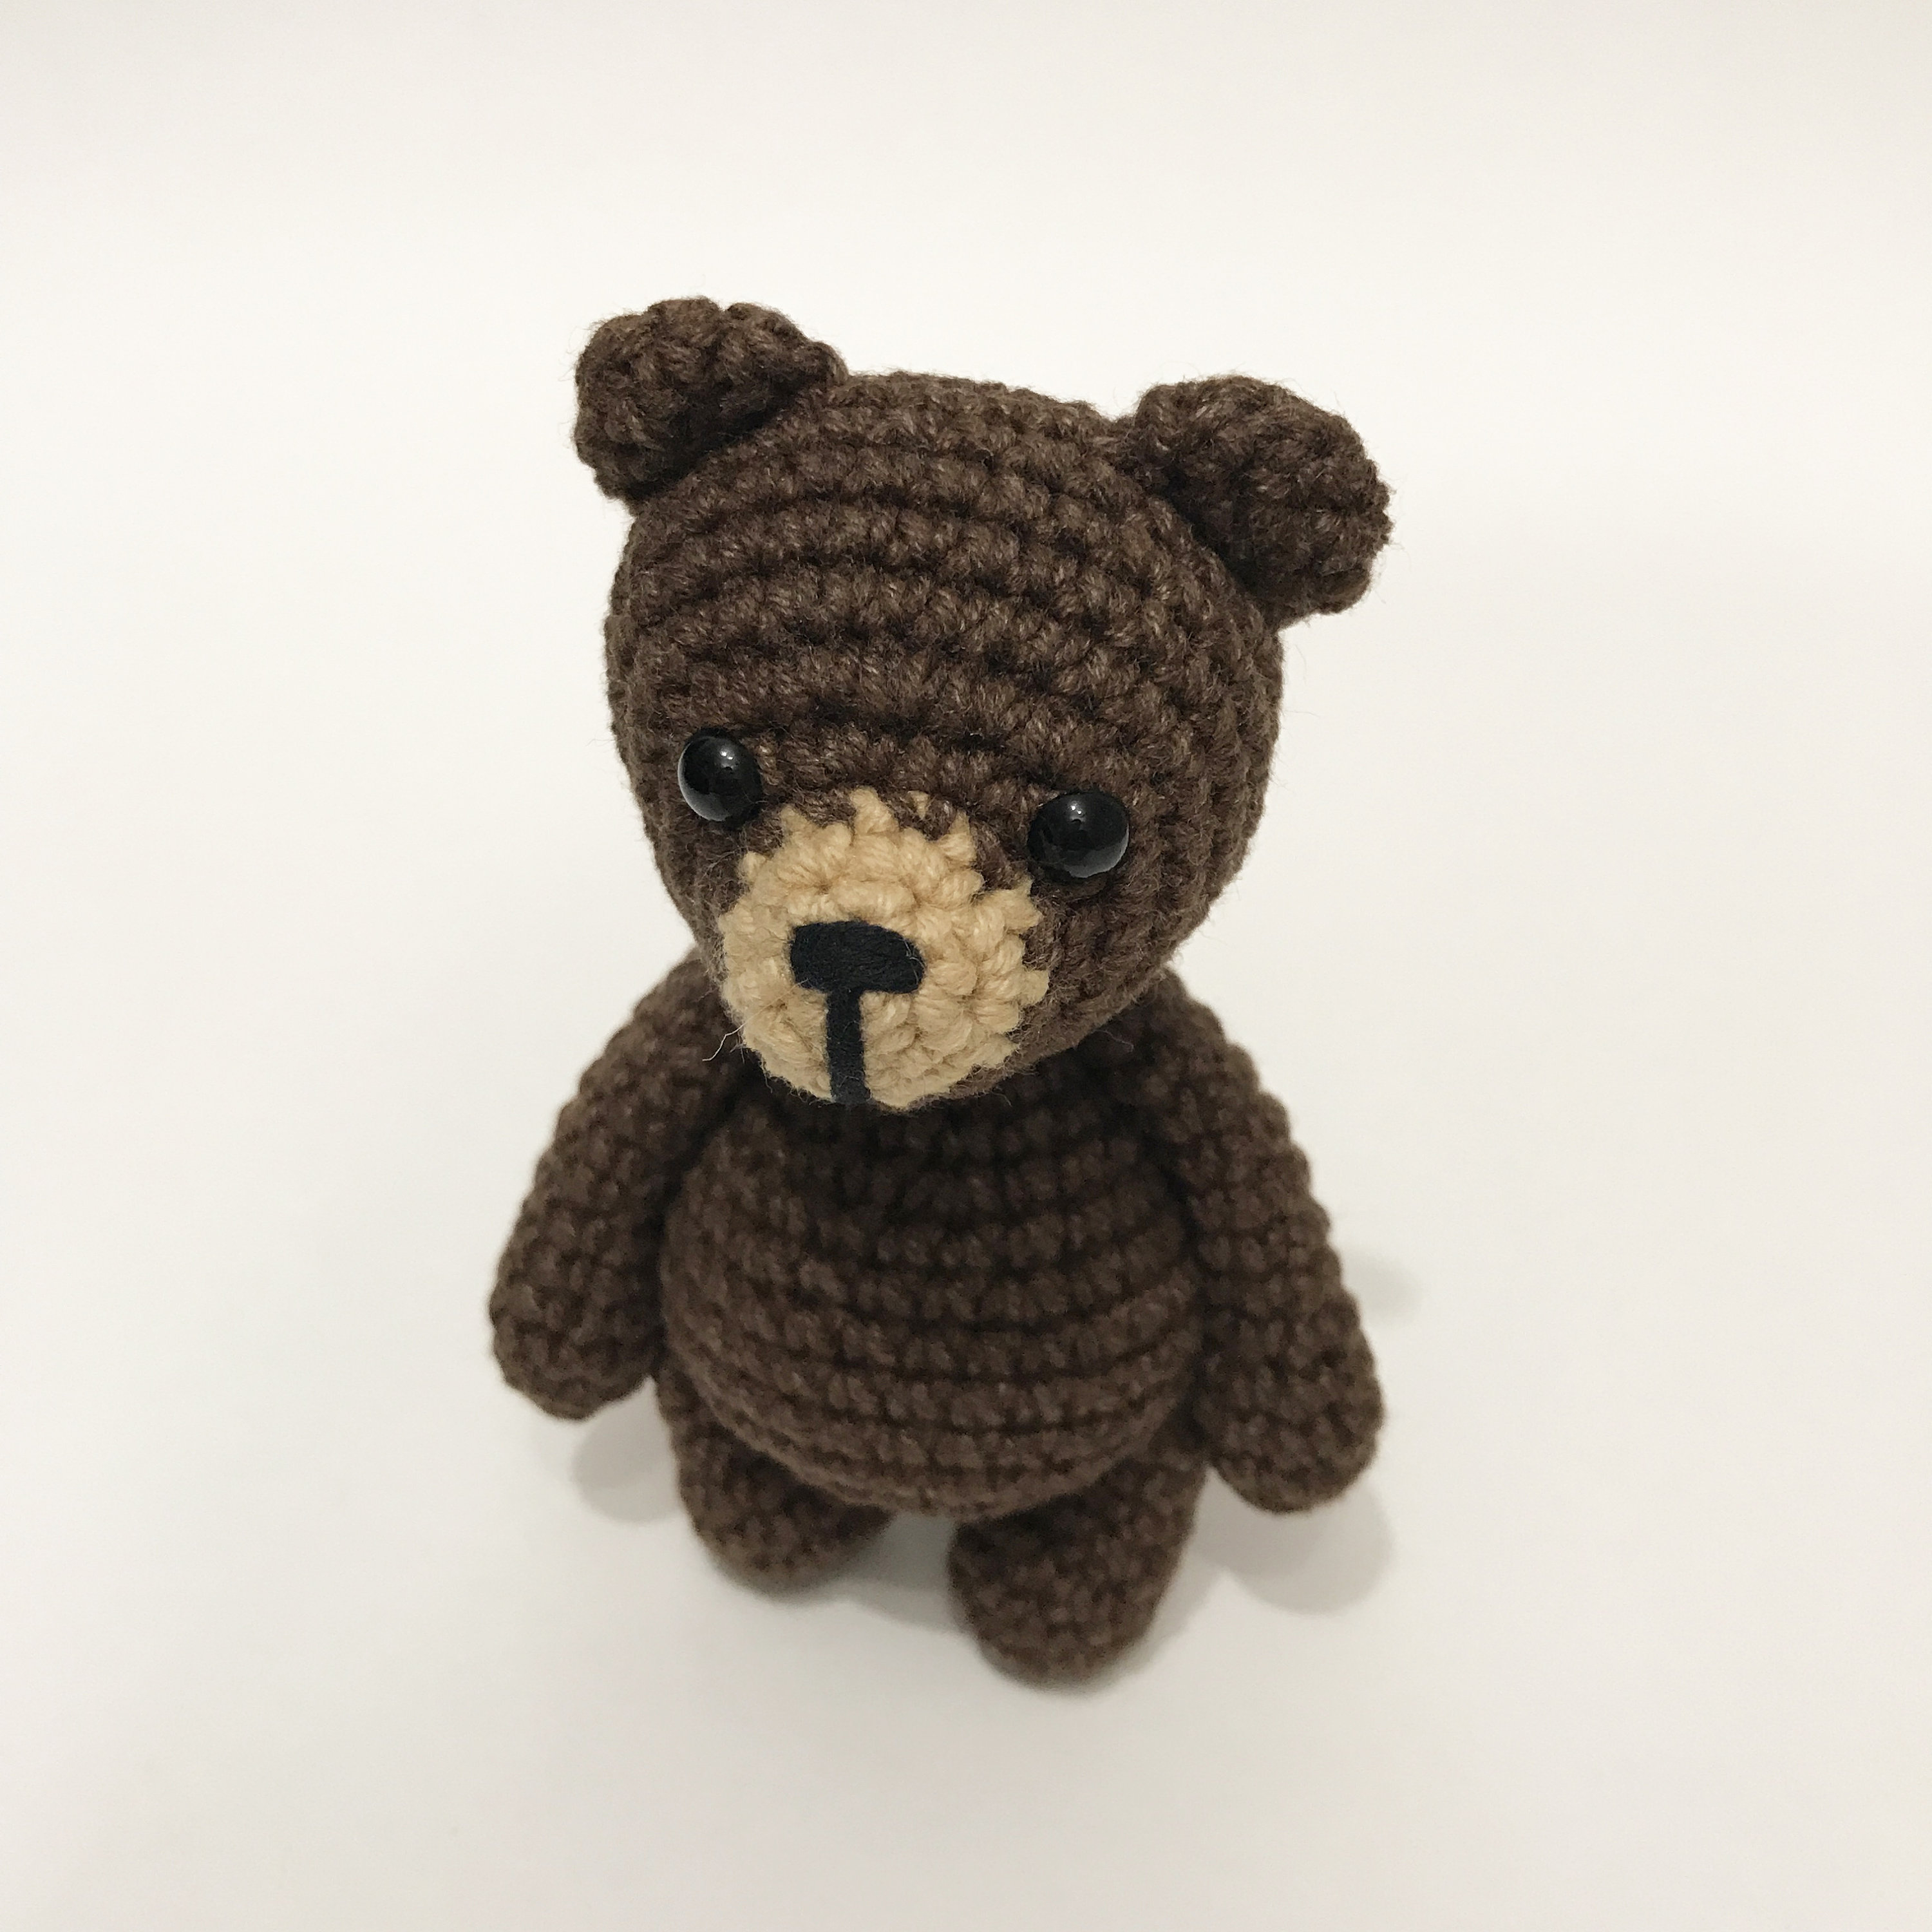 Crochet bear PATTERN / One piece crochet pattern / No-sew | Etsy